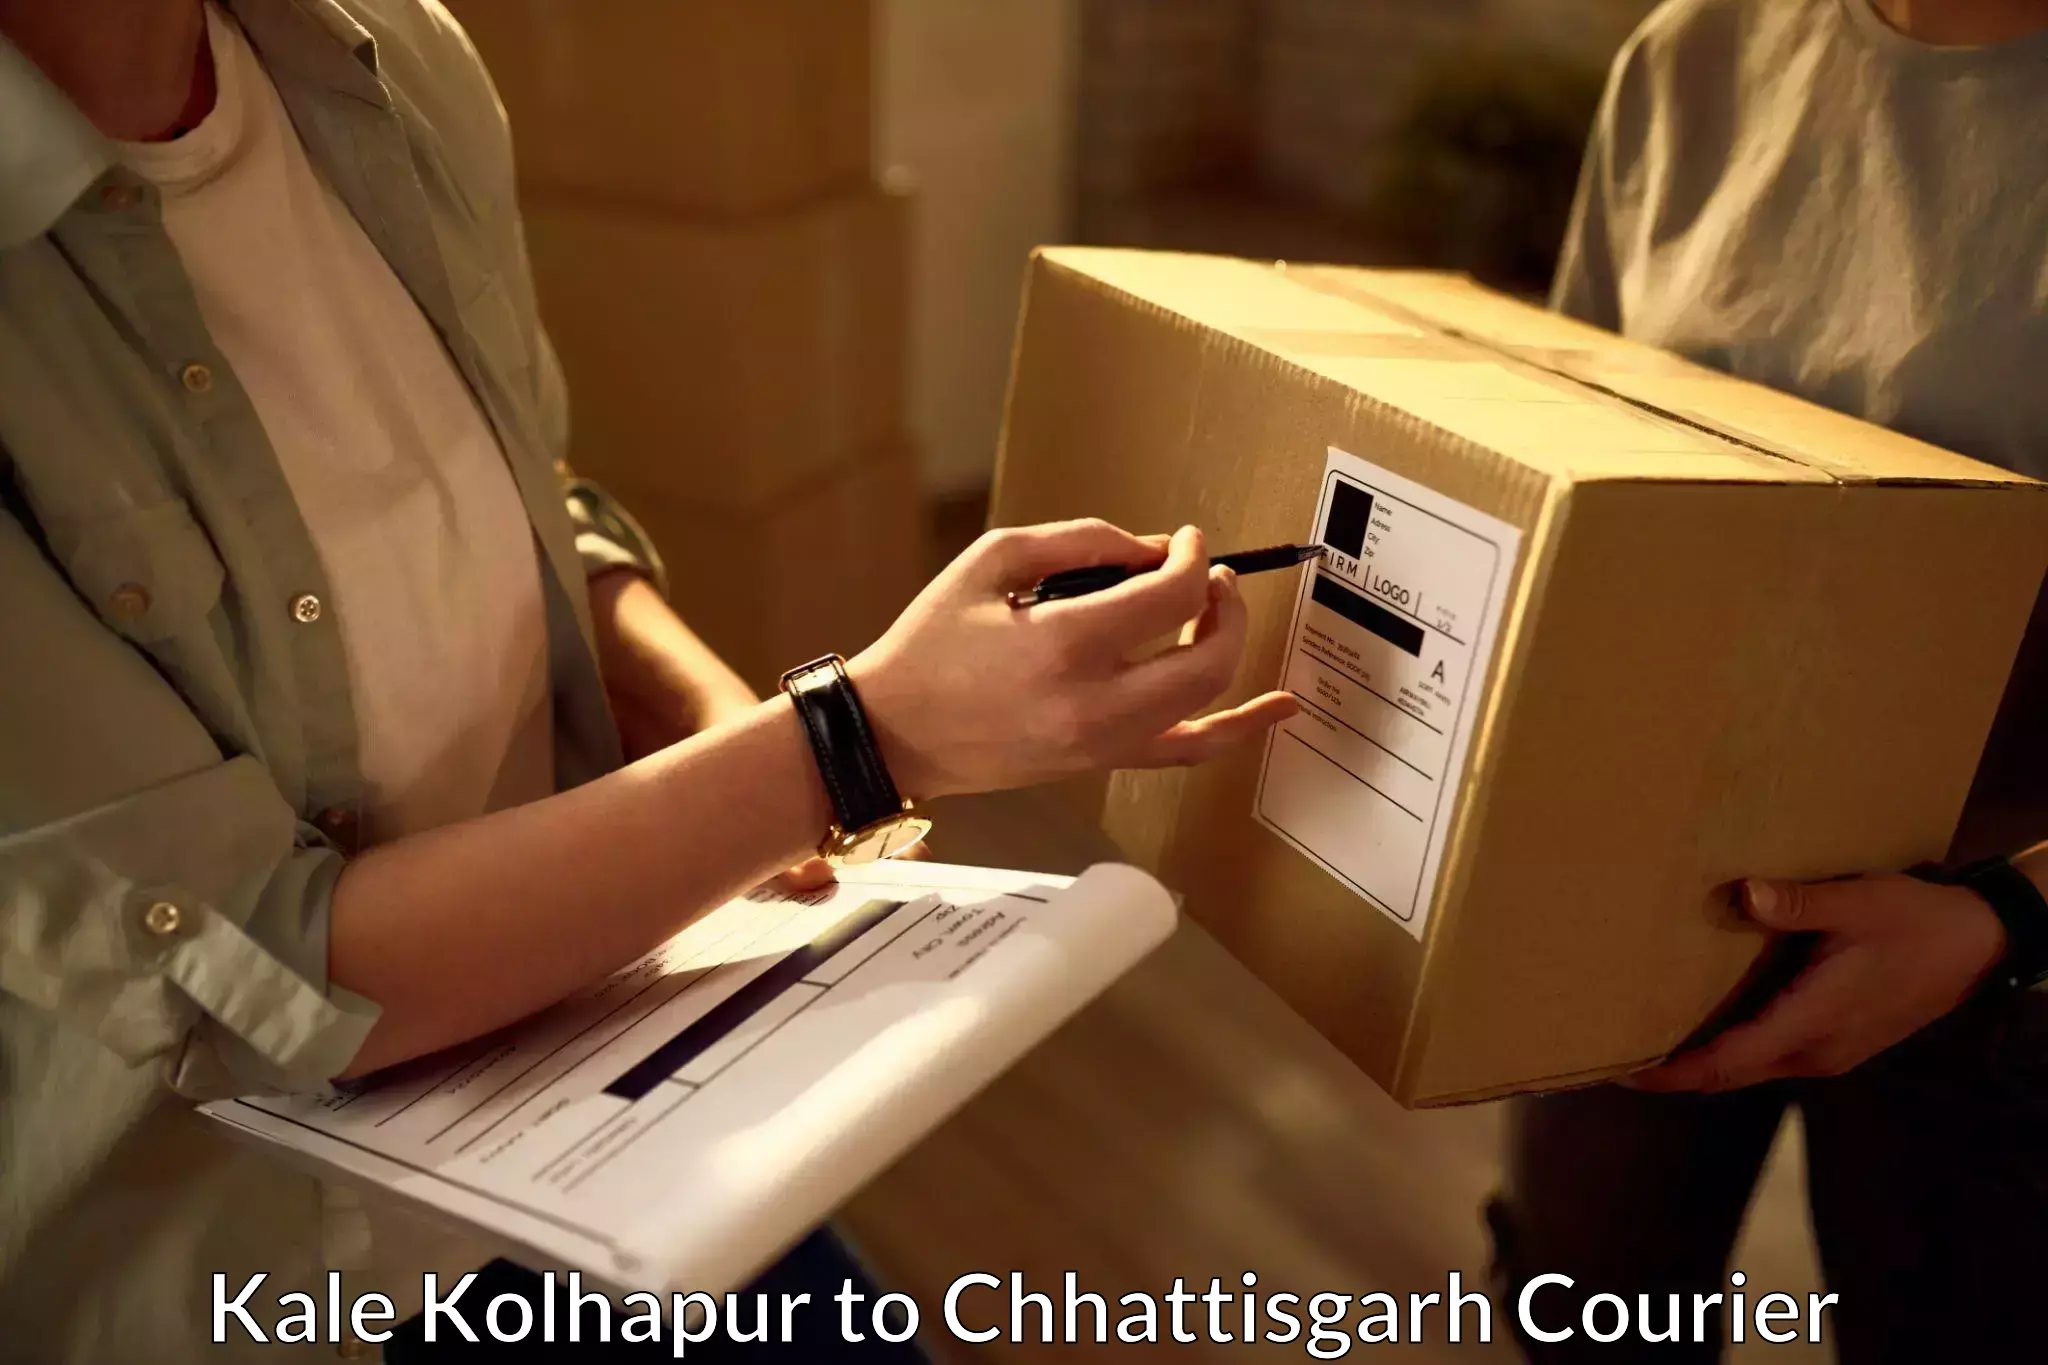 Courier service comparison Kale Kolhapur to Pendra